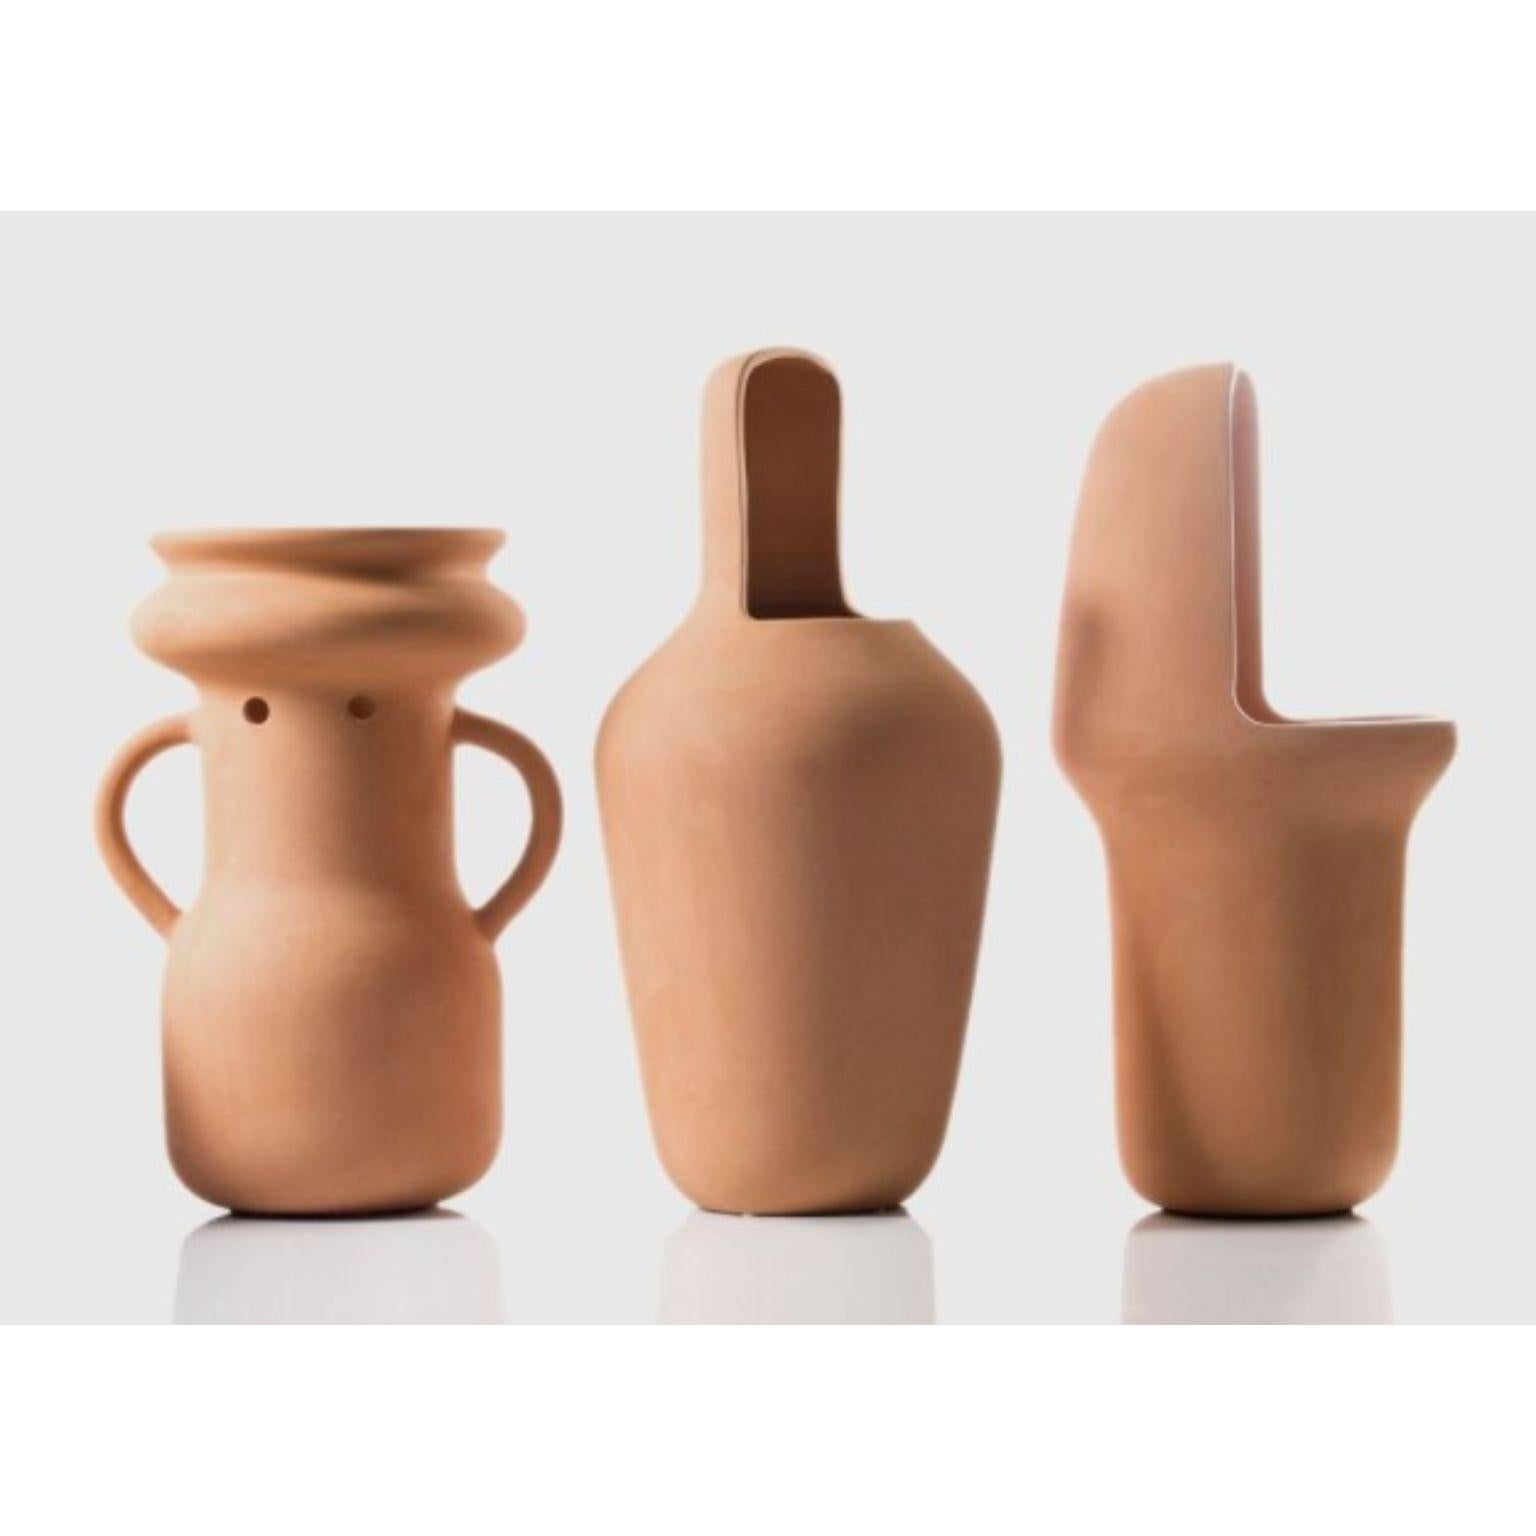 Ensemble de vases Gardenia de Jaime Hayon 
Dimensions : D22 x H45 cm, D22 x h45 cm ,D26 x H37 cm 
Matériaux : Terre cuite faite à la main avec un traitement imperméable.
Peut être utilisé à l'extérieur. 


Jaime Hayon a conçu les vases